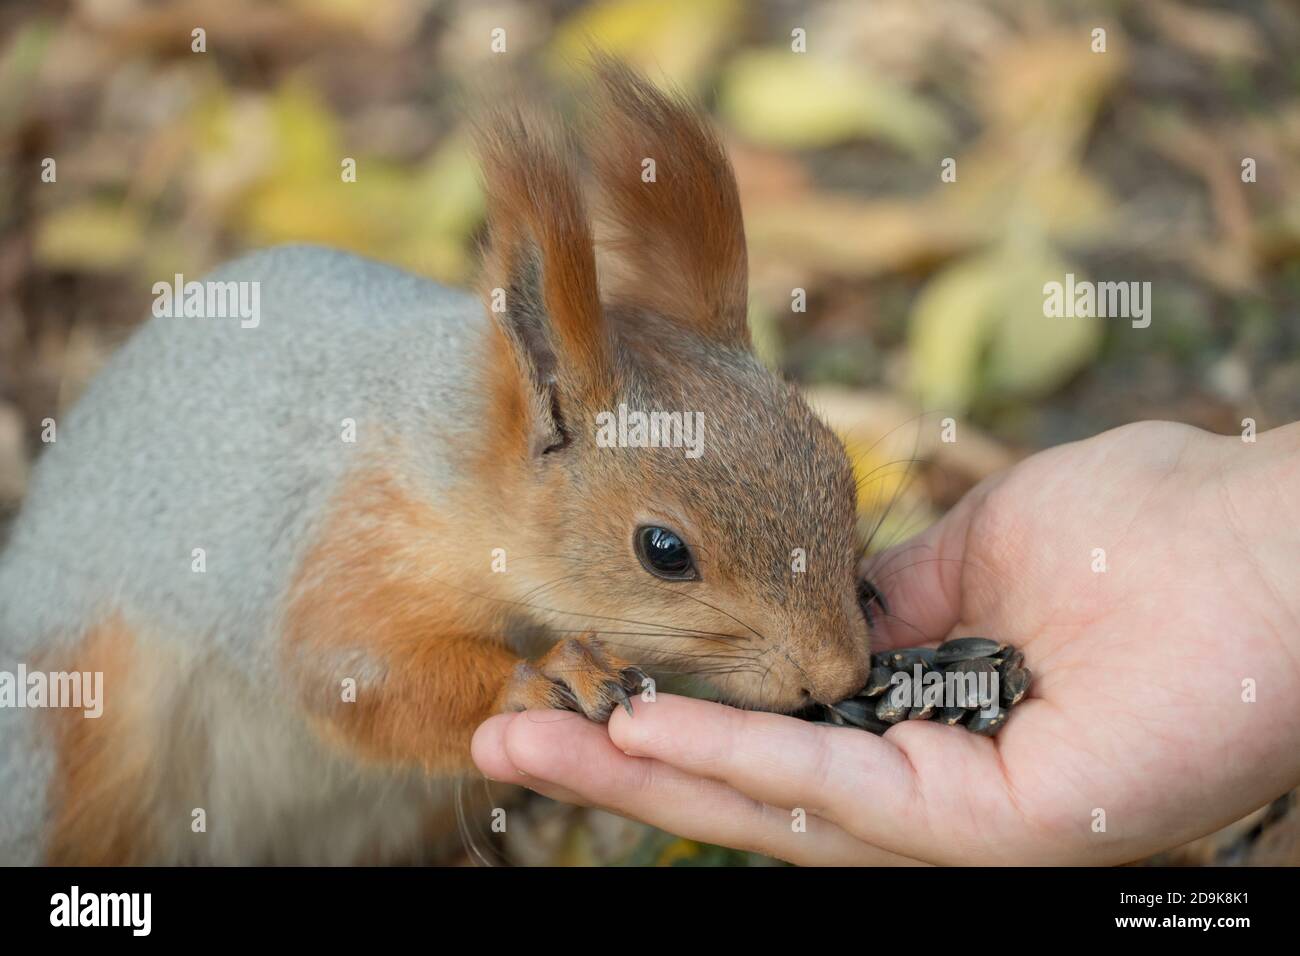 Nutrite lo scoiattolo con i semi. Uno scoiattolo con una coda soffice stuzzica i semi. Natura selvaggia. Lo scoiattolo mangia da vicino. Zoologia, mammiferi, natura. Piccolo roditore Foto Stock